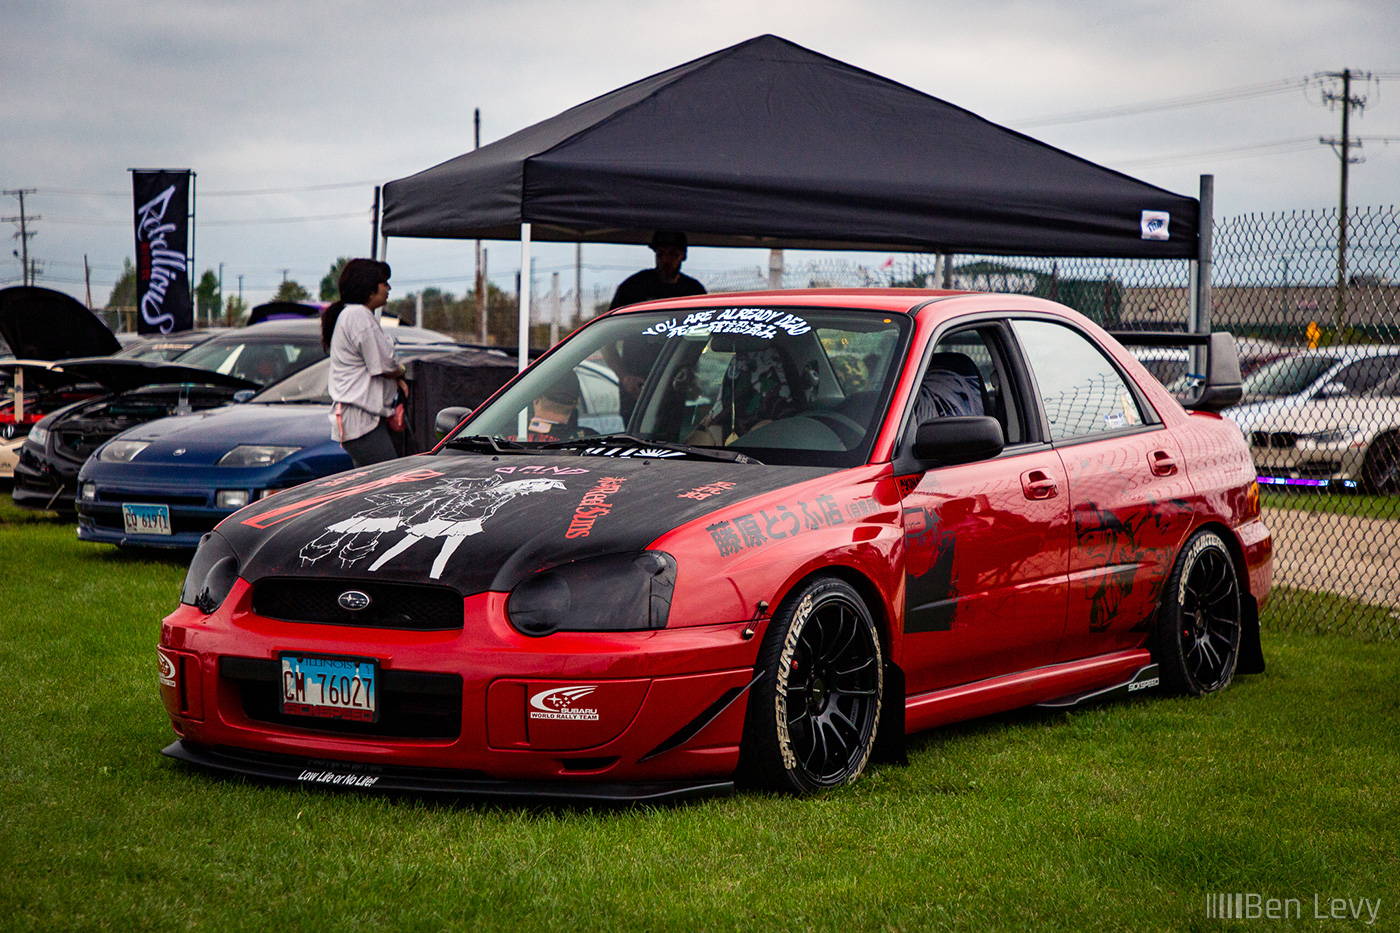 Red Subaru Impreza at Car Show in Rockford, IL